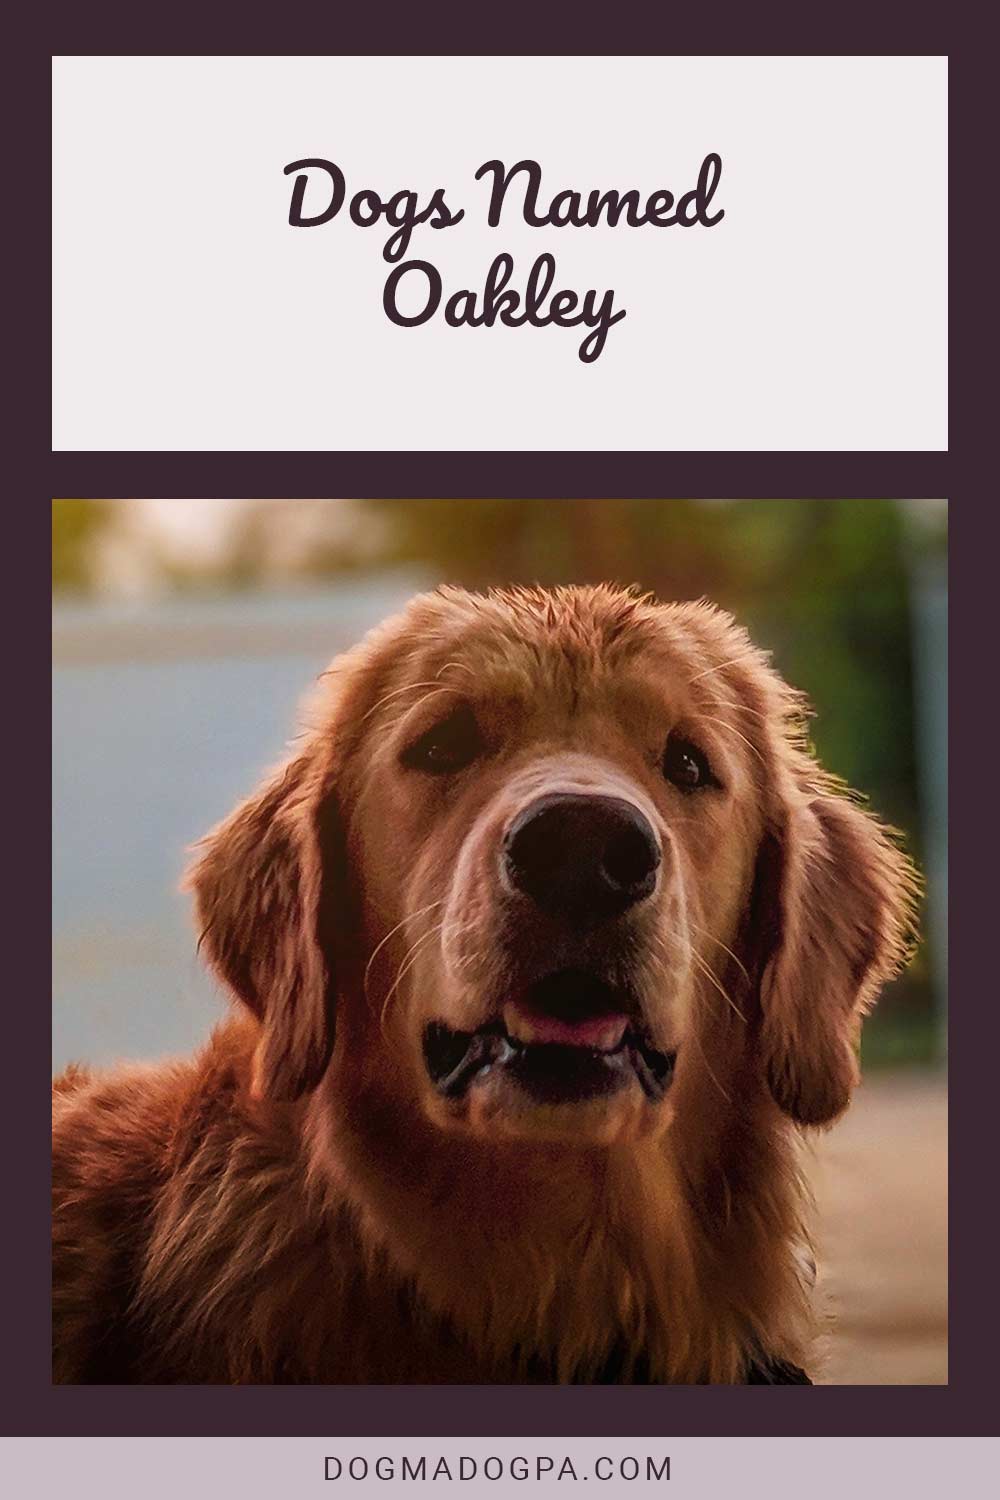 Dogs Named Oakley